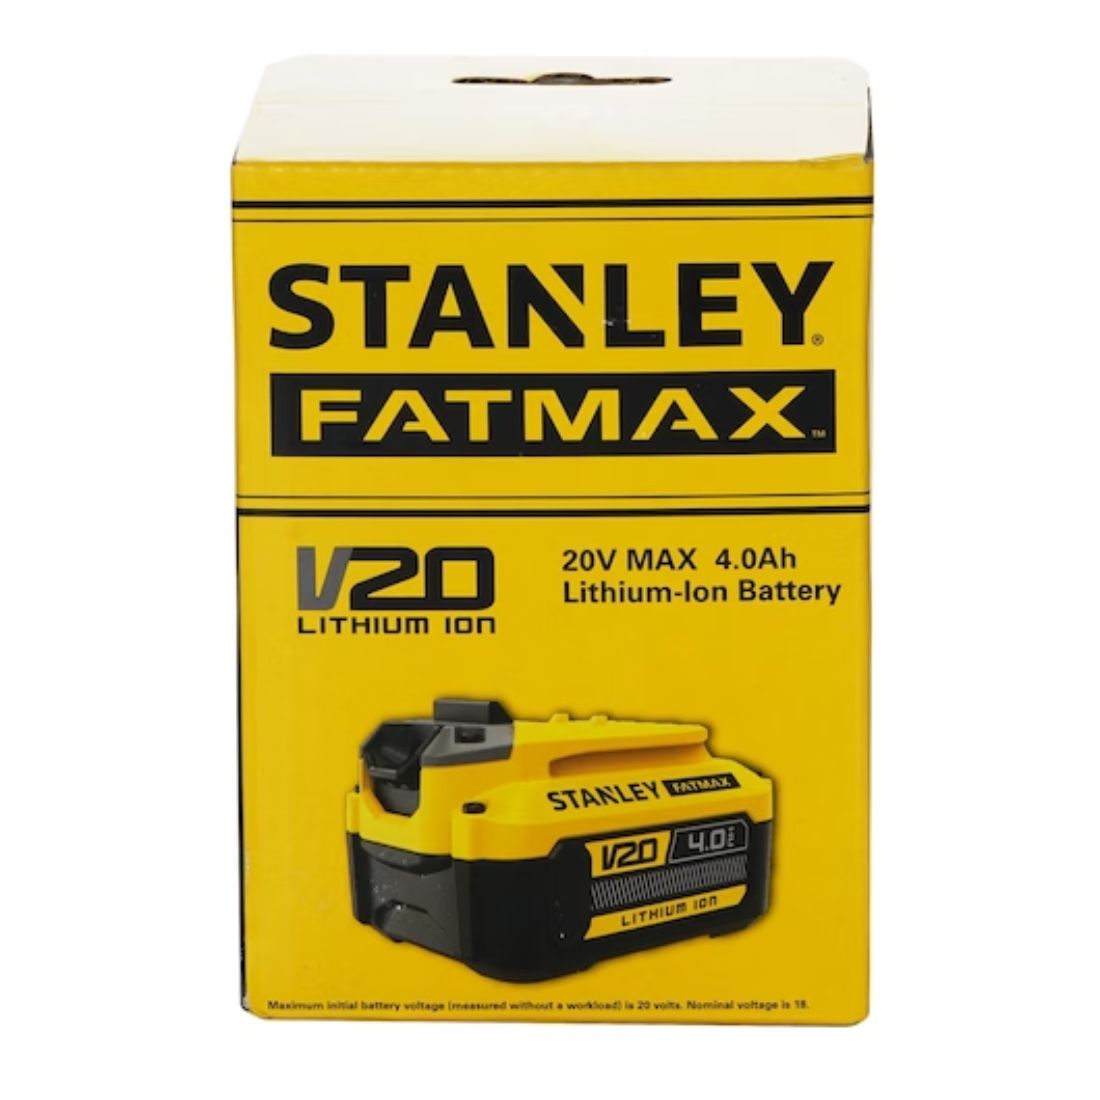 STANLEY FATMAX SB204-B1 20V Max 4.0Ah Lithium-Ion Battery